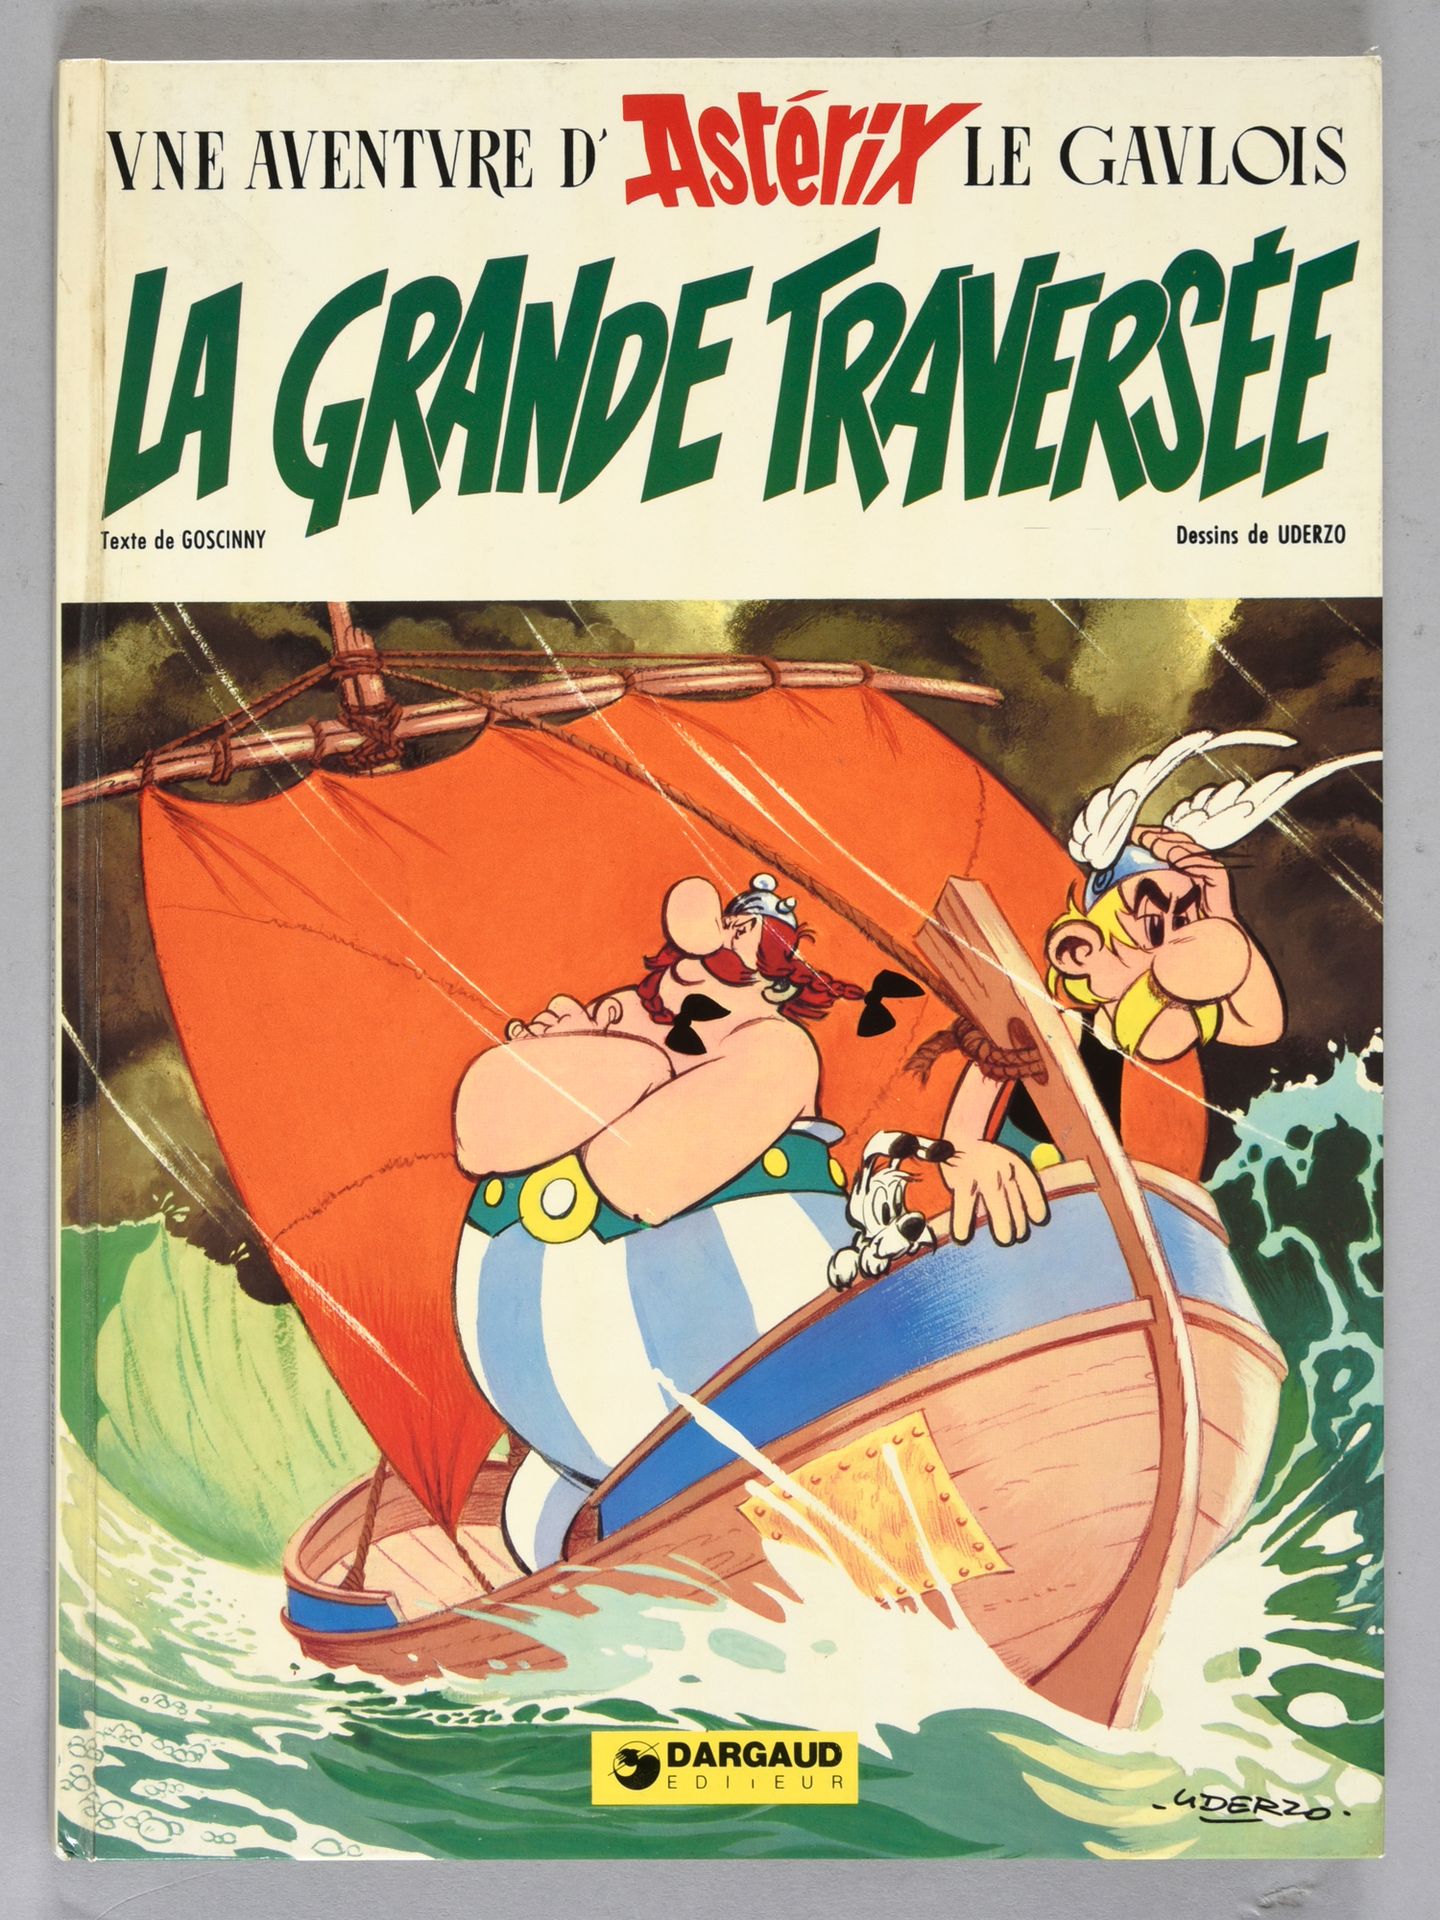 UDERZO ASTERIX. LA GRANDE TRAVERSÉE.
First edition with three lines of dedicatio&hellip;